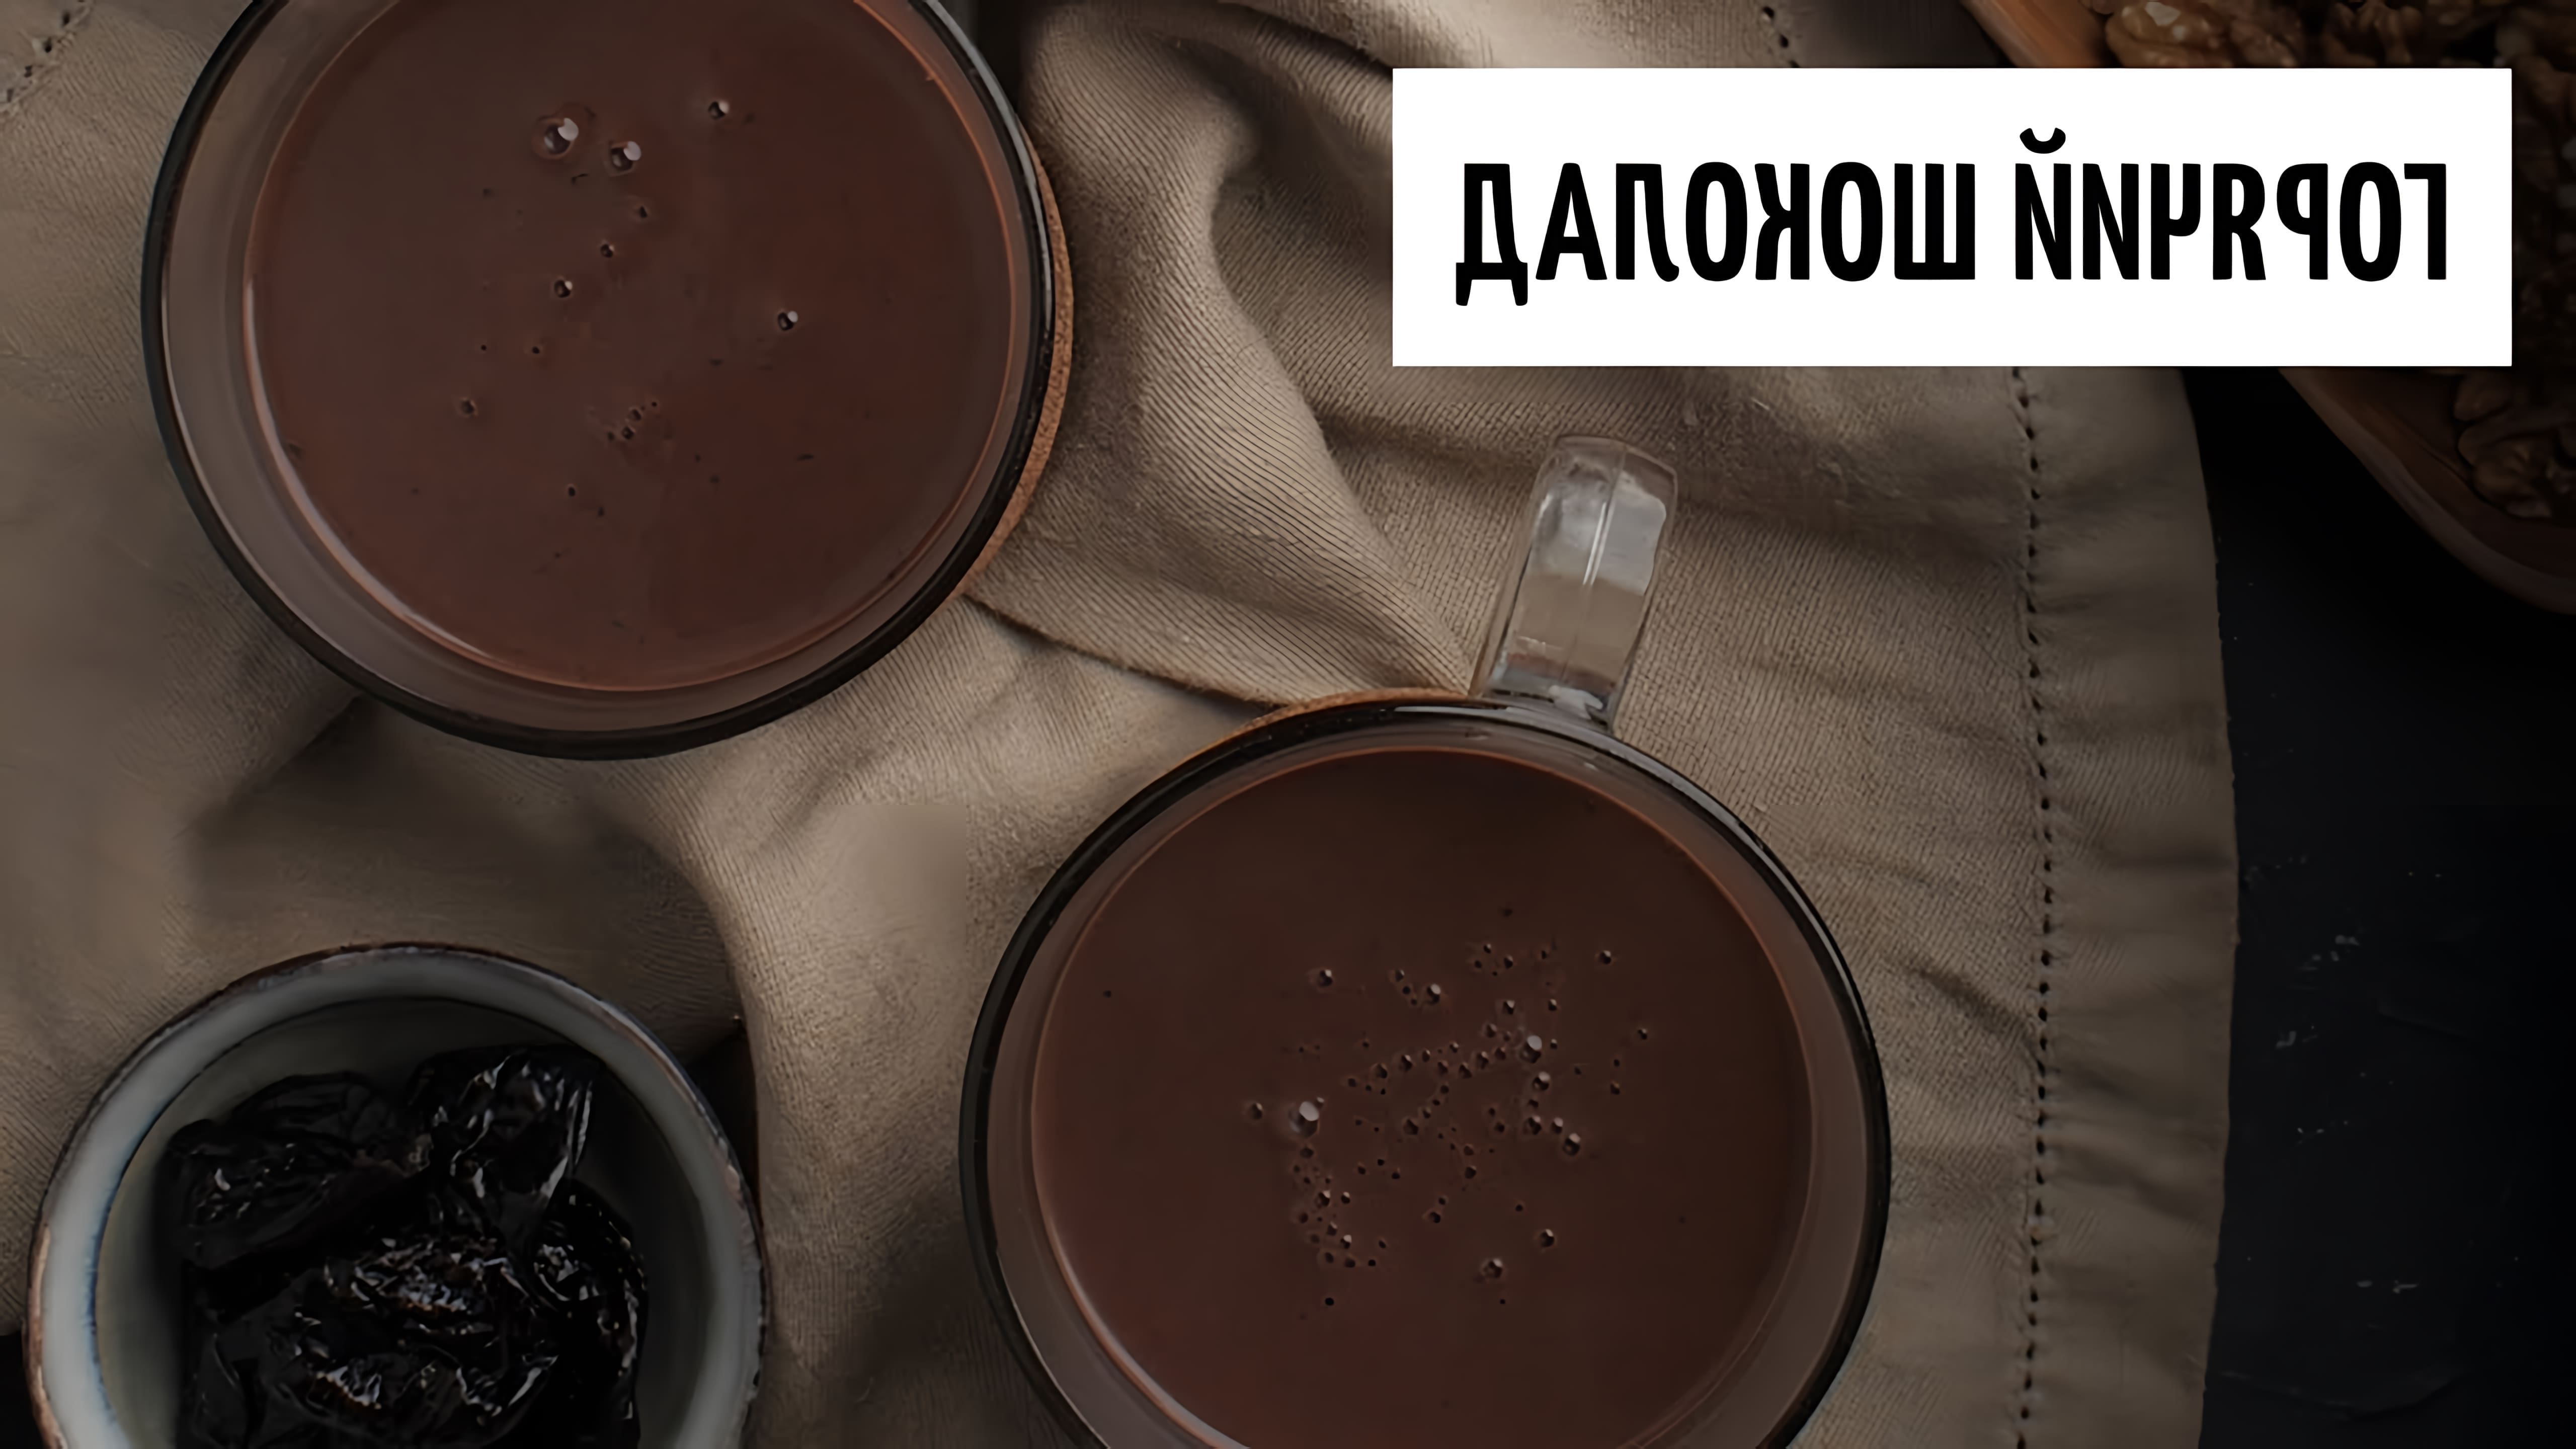 Горячий шоколад - это вкусный и ароматный напиток, который можно приготовить в домашних условиях